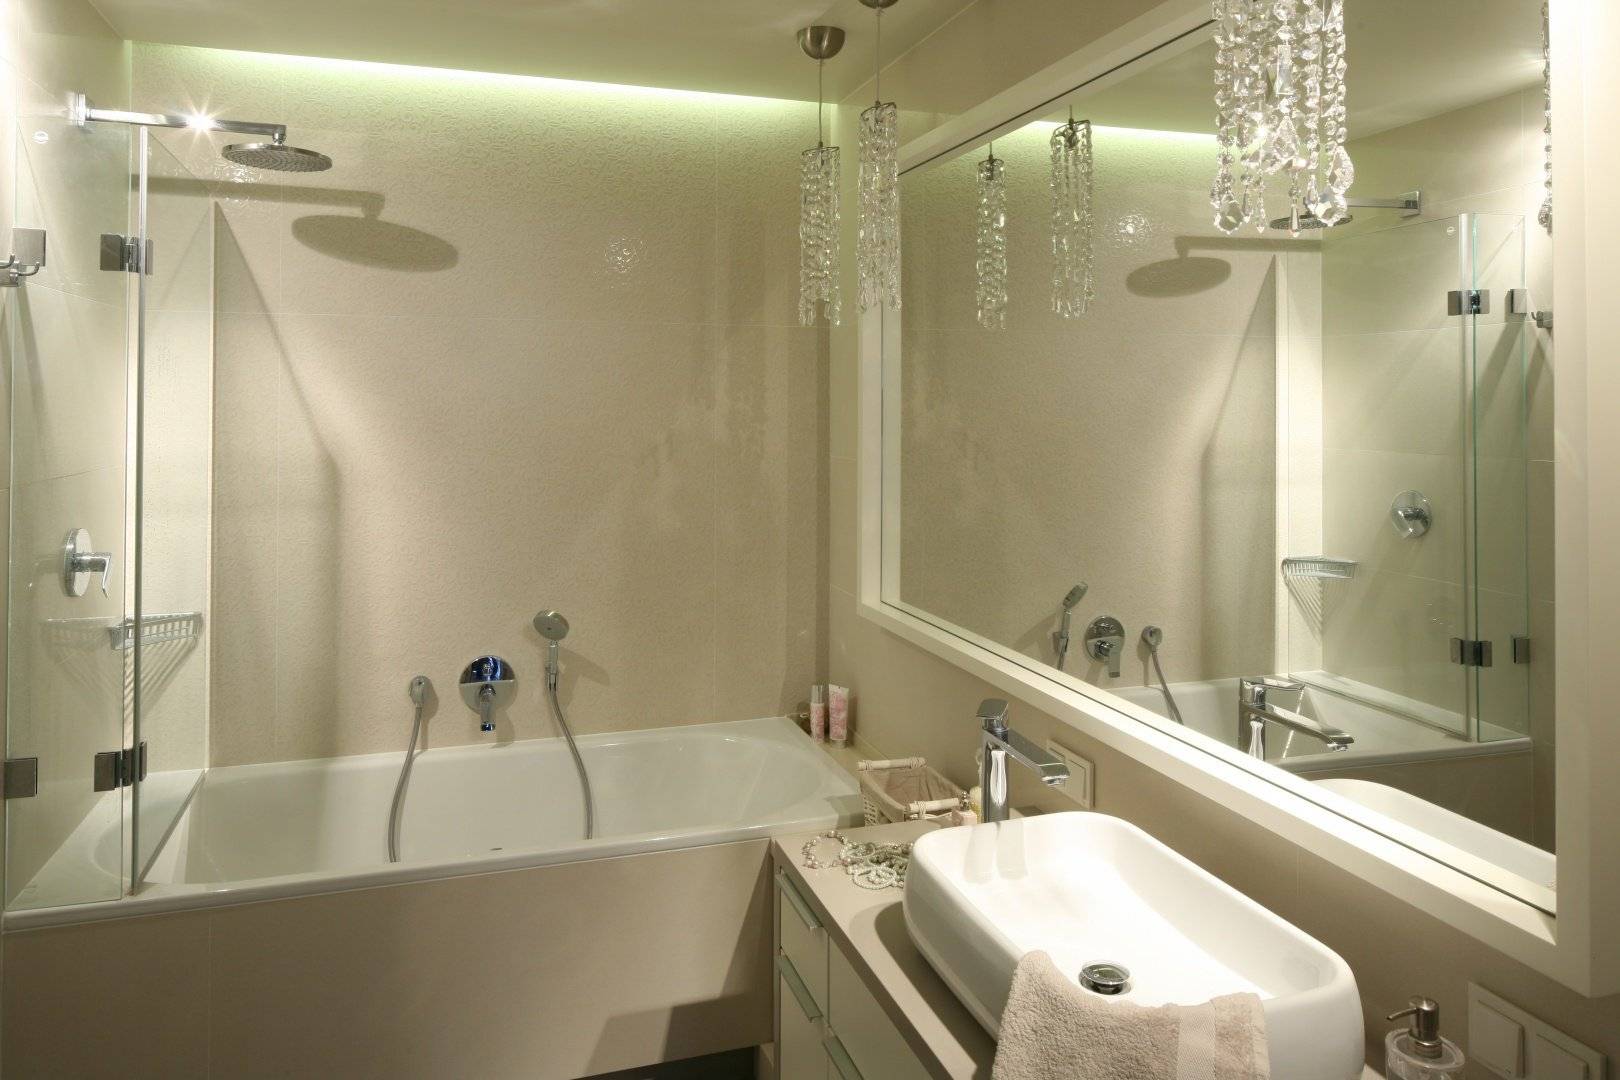 Освещение в ванной: выбор ламп и светильников ?(+70 фото идей)